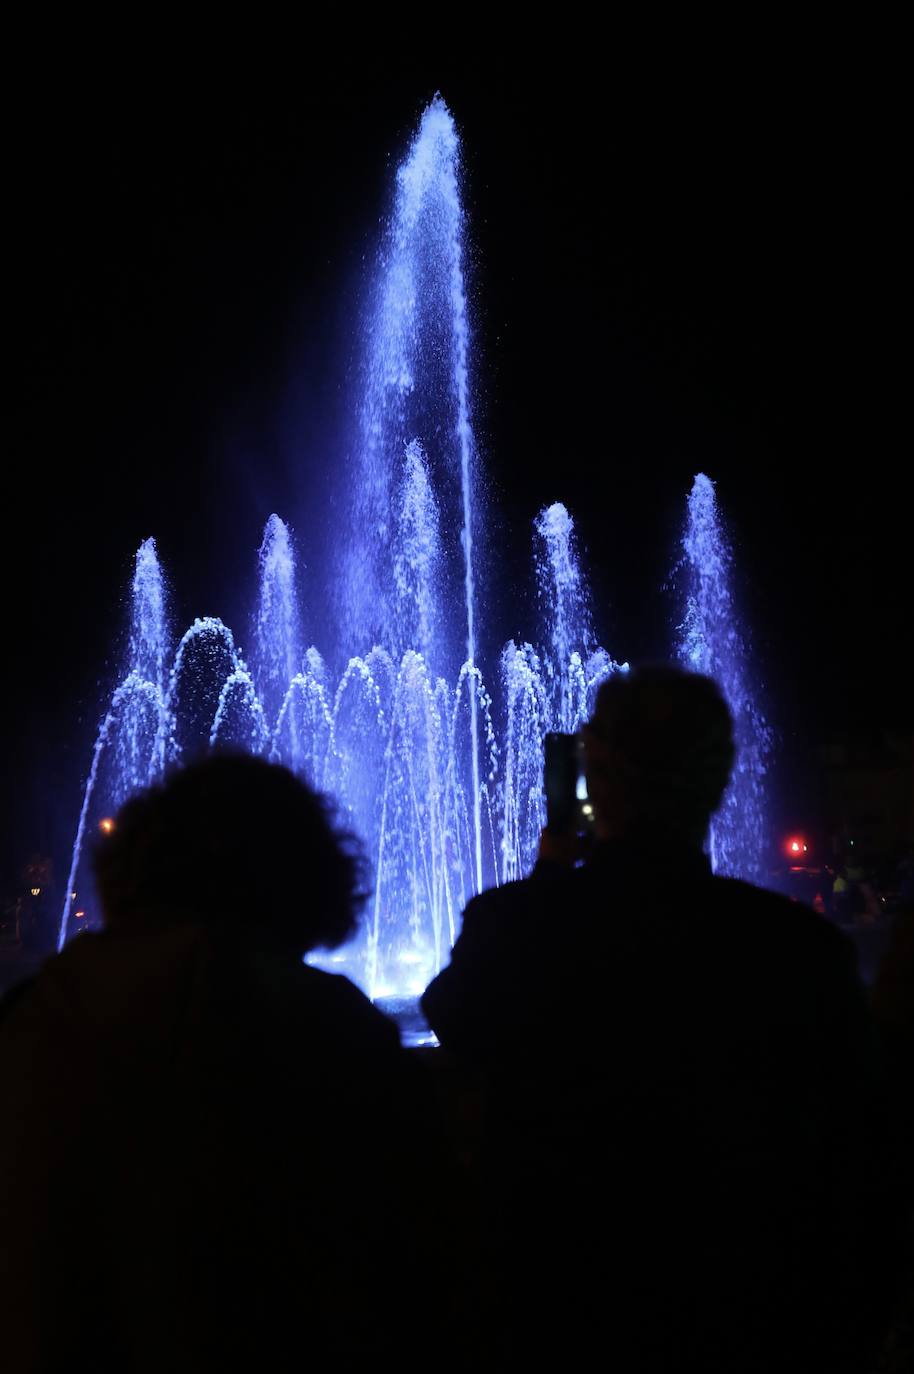 FOTOS: Luz, proyecciones y agua... la fuente cibernética de Cádiz